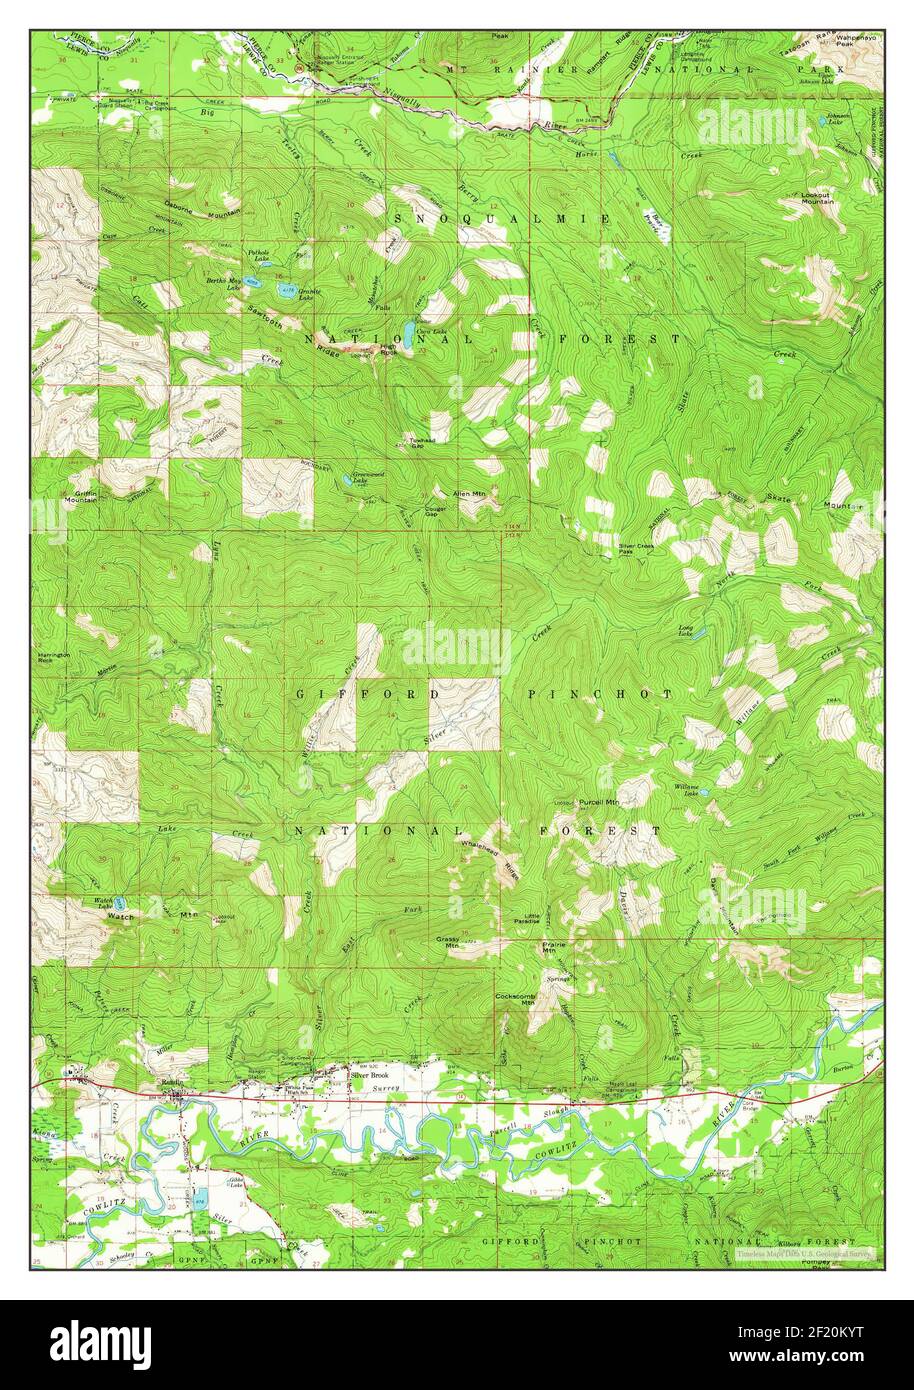 Randle, Washington, map 1962, 1:62500, United States of America by Timeless Maps, data U.S. Geological Survey Stock Photo